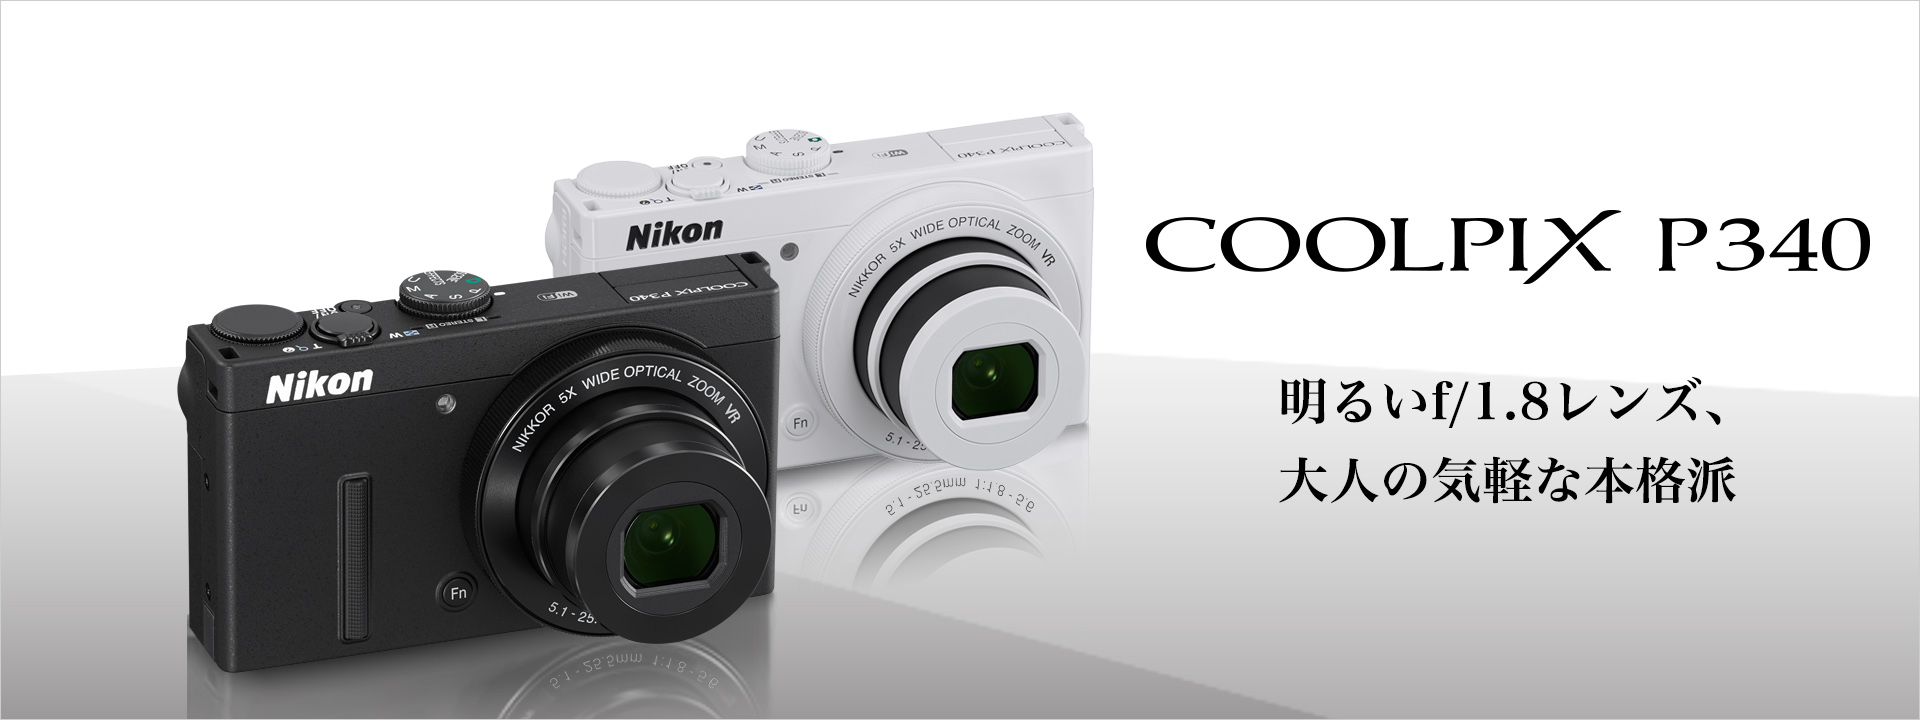 Nikon COOLPIX P340 [ブラック]